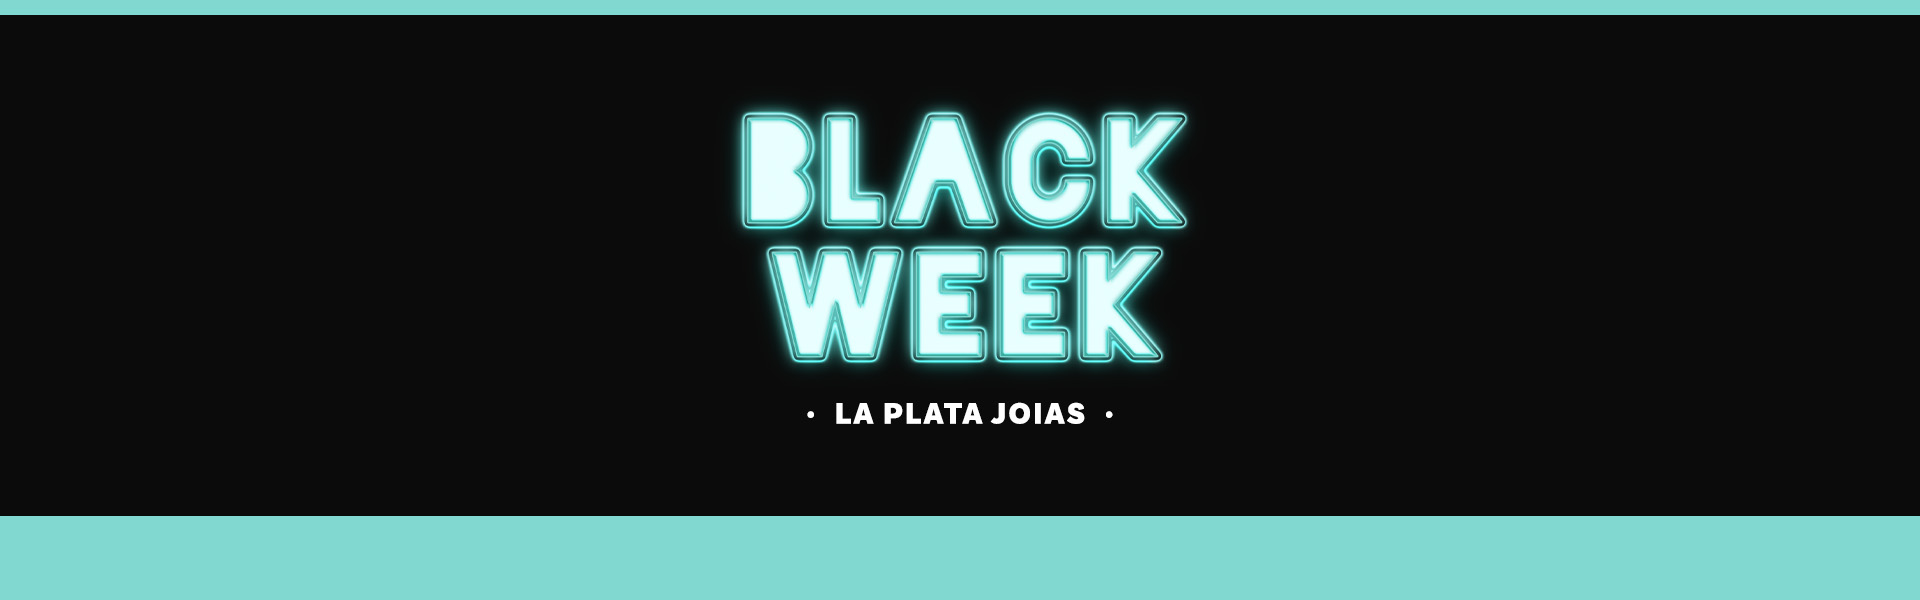 Black Week La Plata Joias | Até 25% de desconto